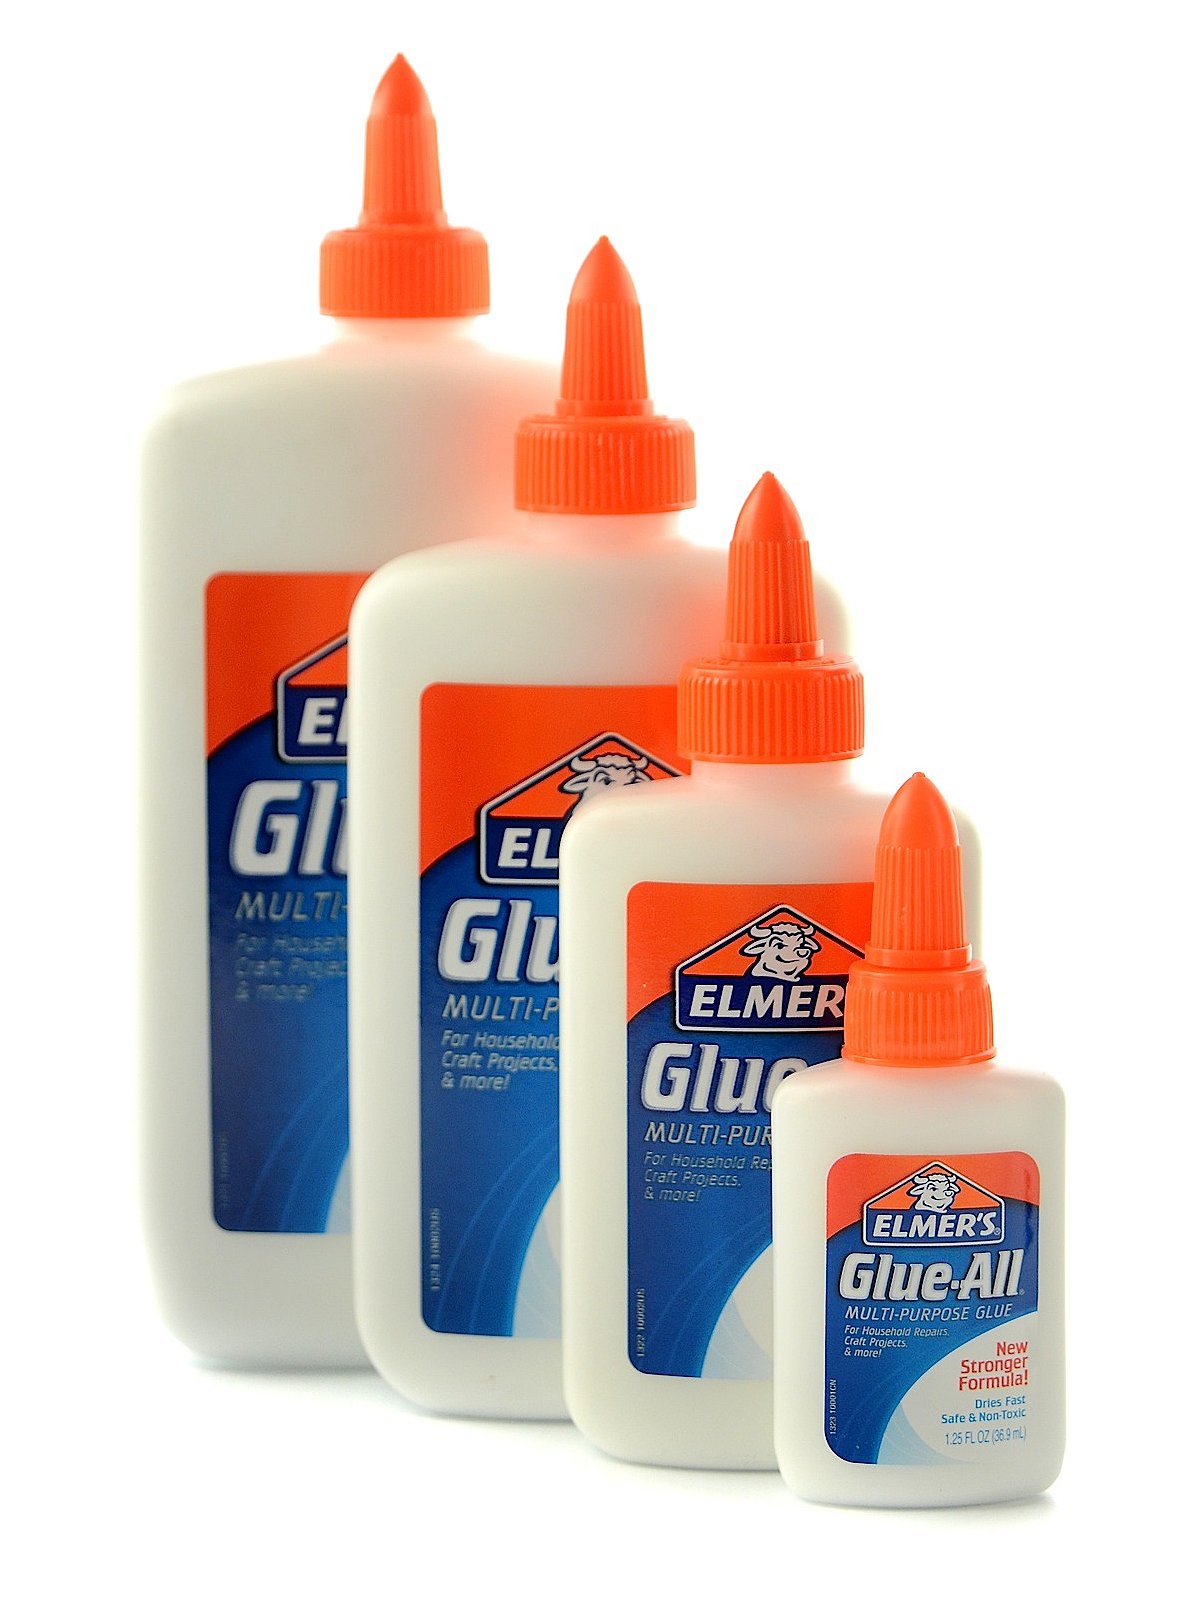 Elmer's Glue-All Multi-Purpose Glue - 16 fl oz